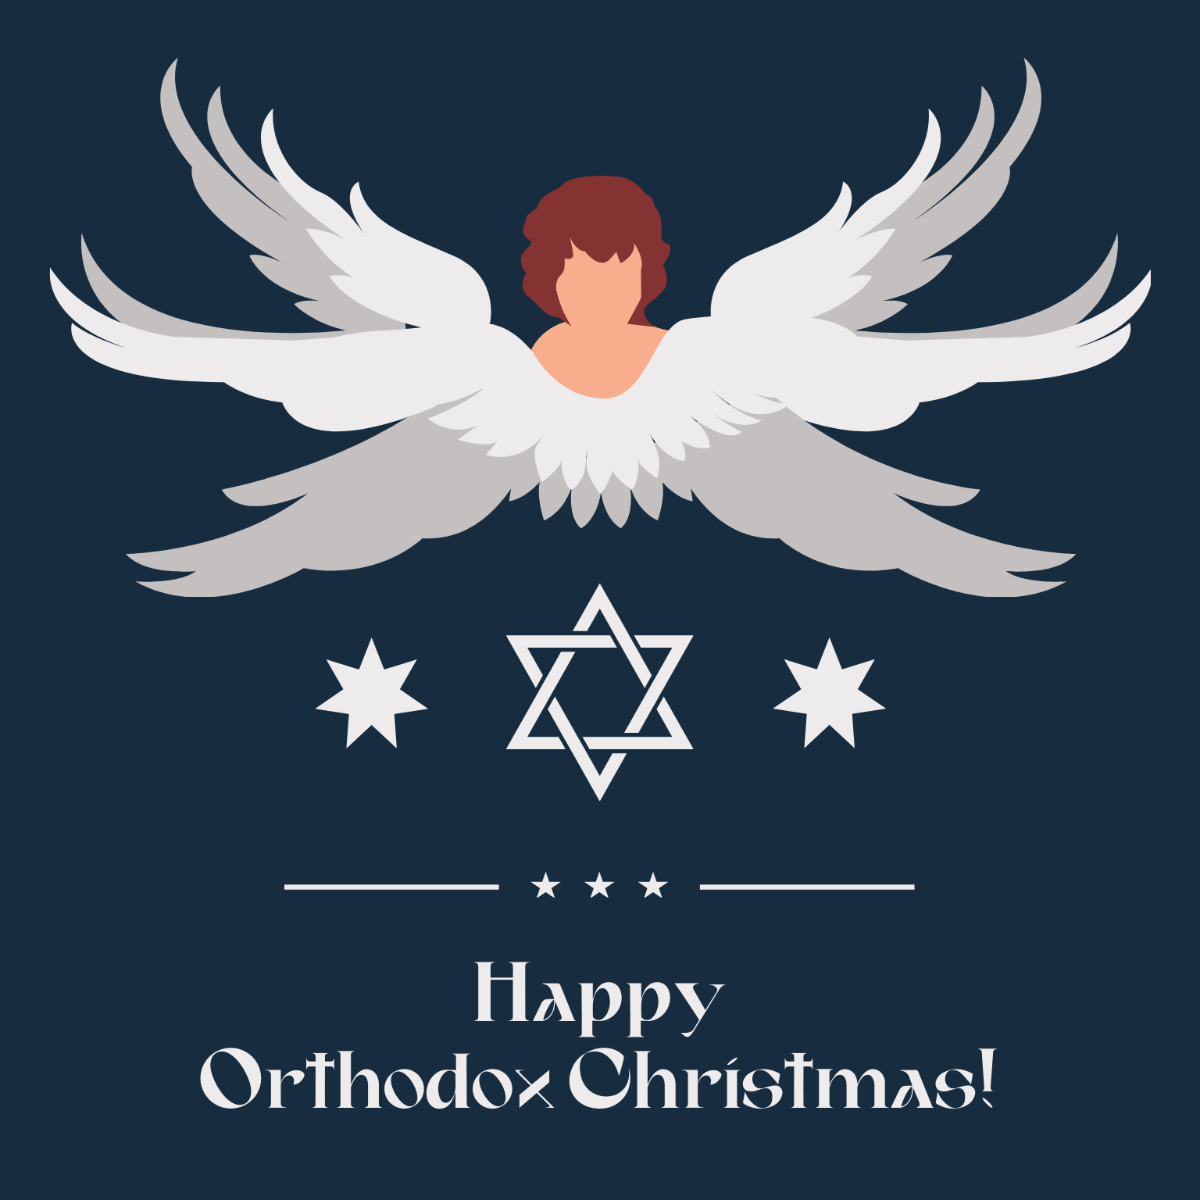 Free Orthodox Christmas Illustration Template